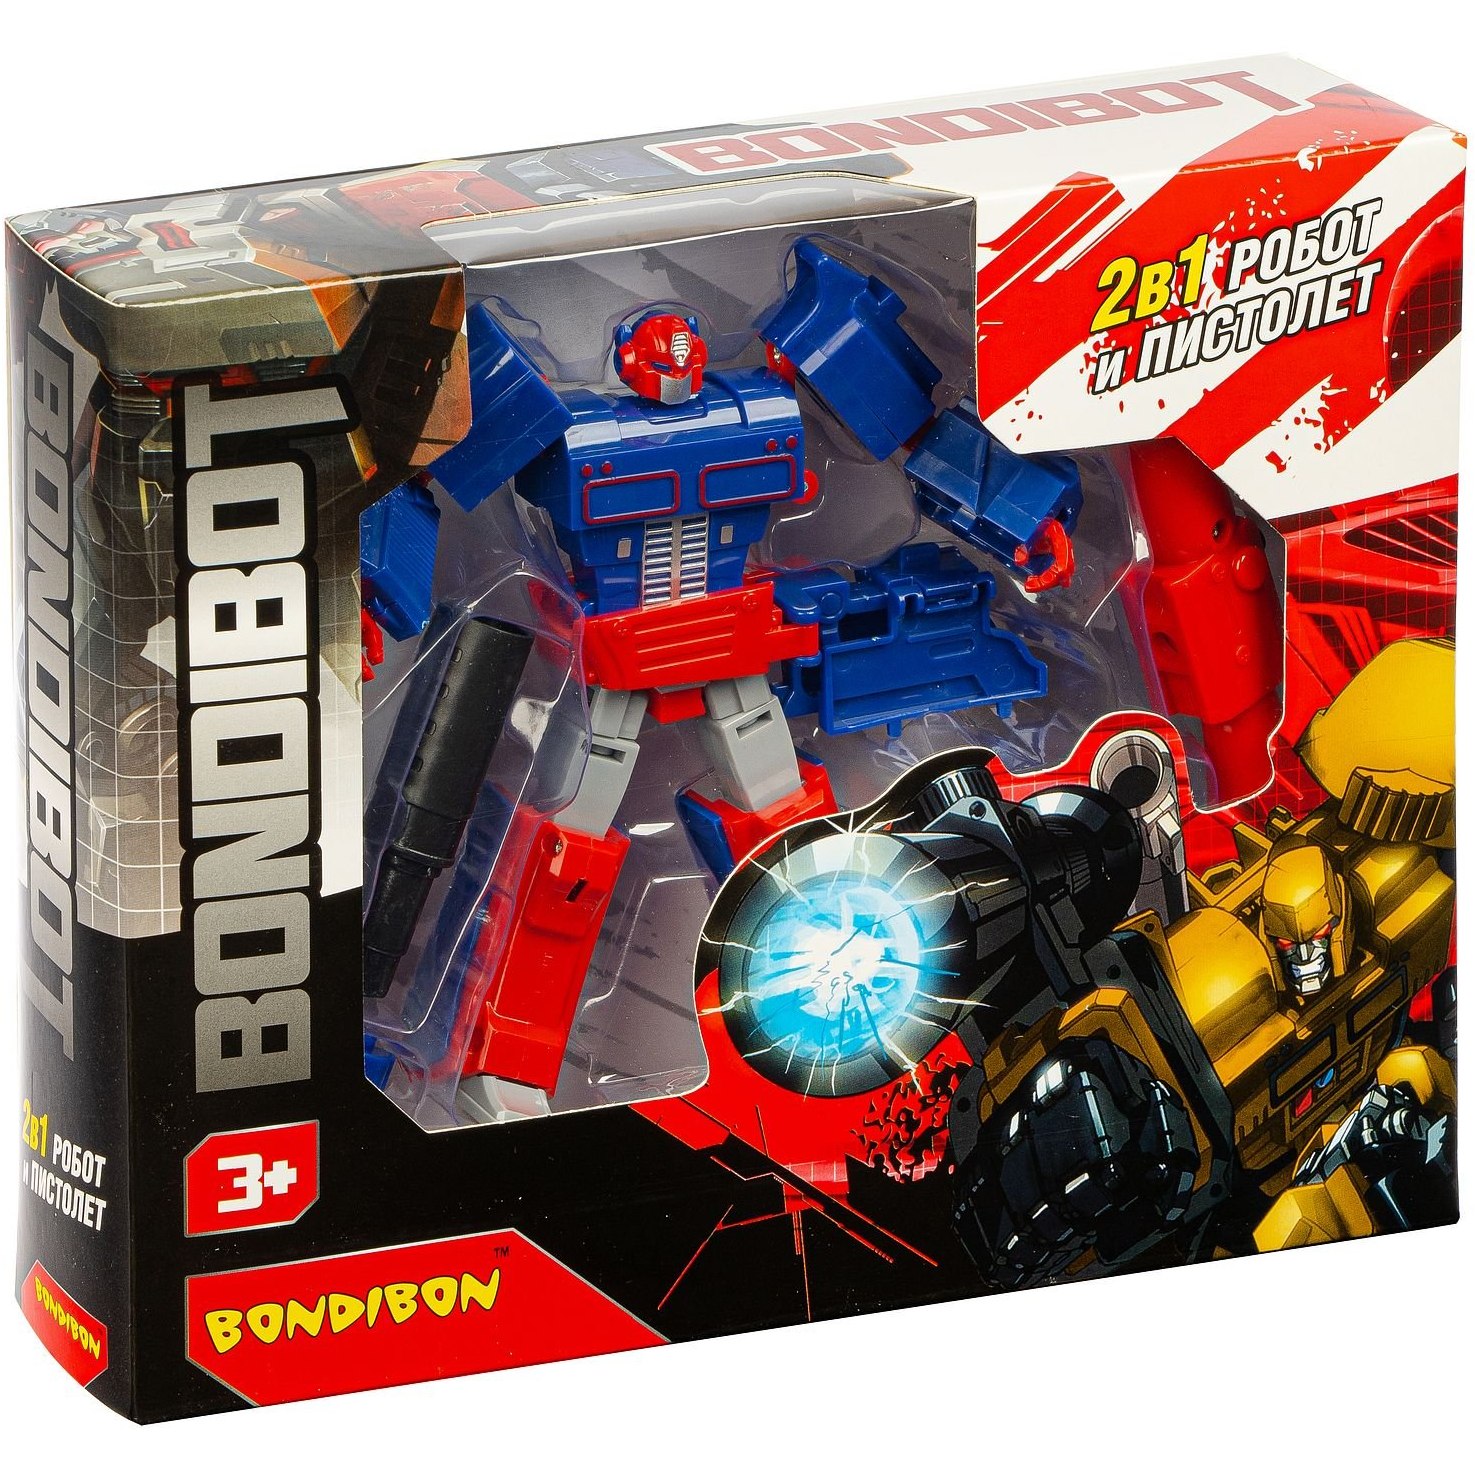 Трансформер 2в1 BONDIBOT робот и пистолет с проектором, Bondibon BOX 25x20х6 см, цвет синий, арт.500-35. ВВ4962